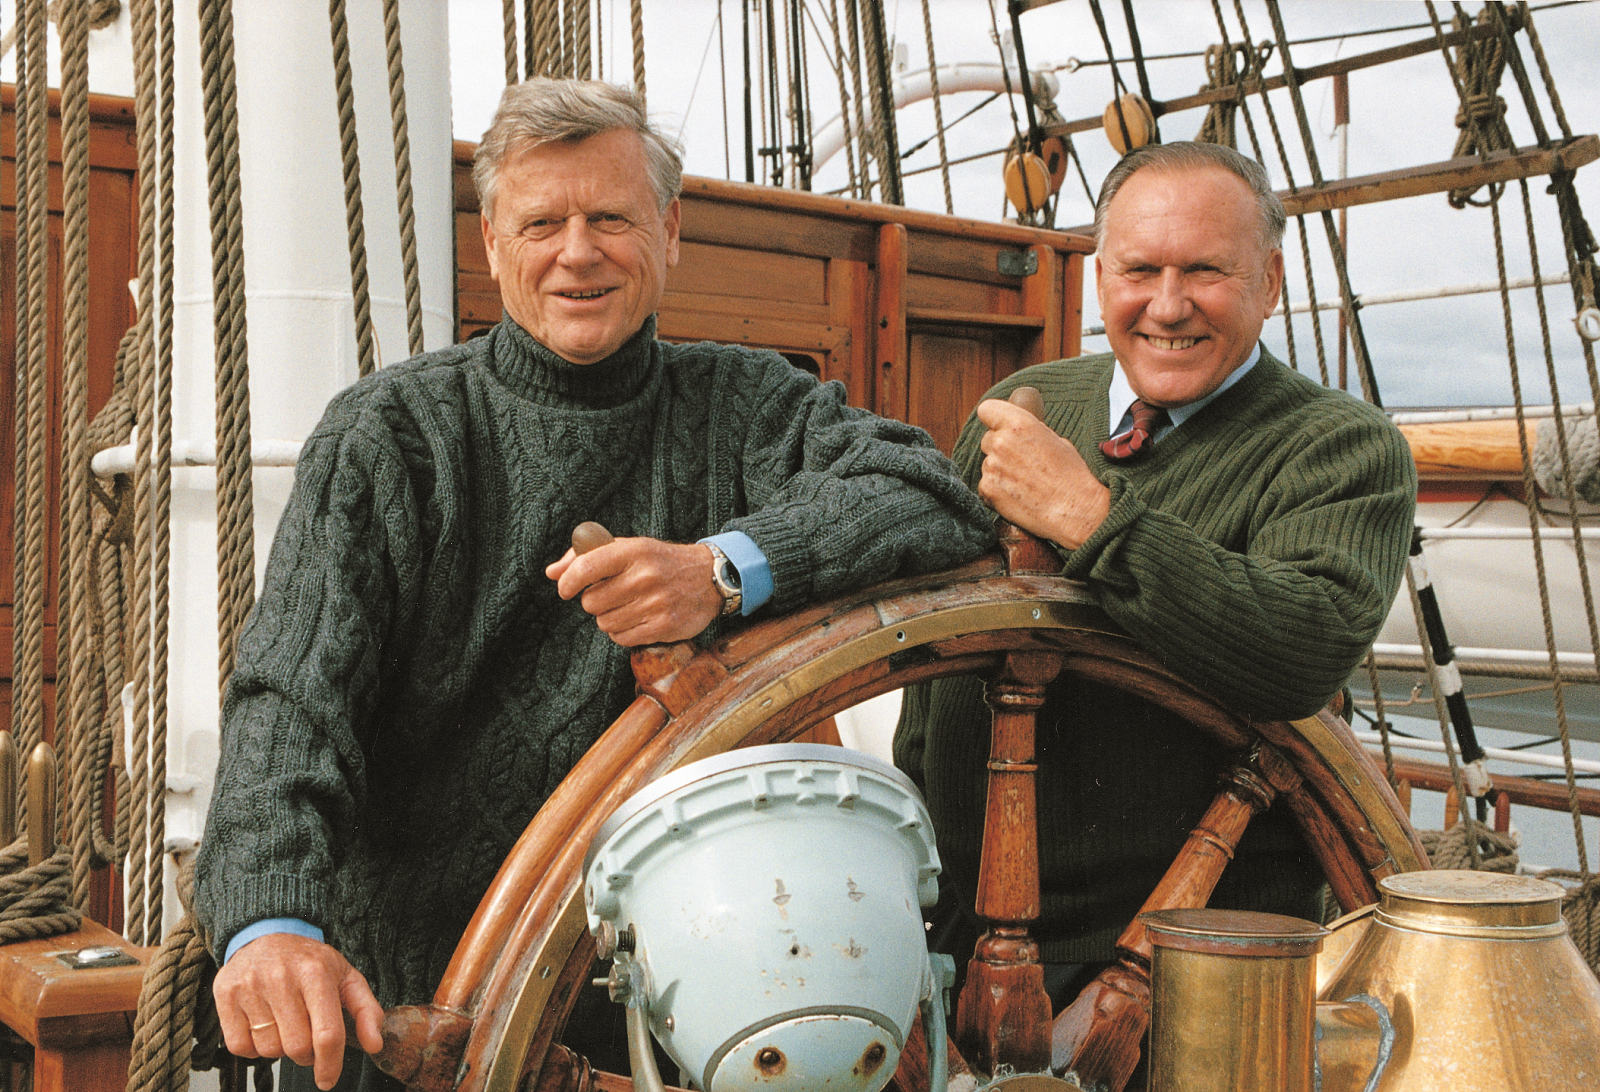 Der norwegische Reeder Arne Wilhelmsen starb am Osterferienwochenende. Wilhelmsen wurde 90 Jahre alt und war einer der Pioniere der Kreuzfahrtindustrie.